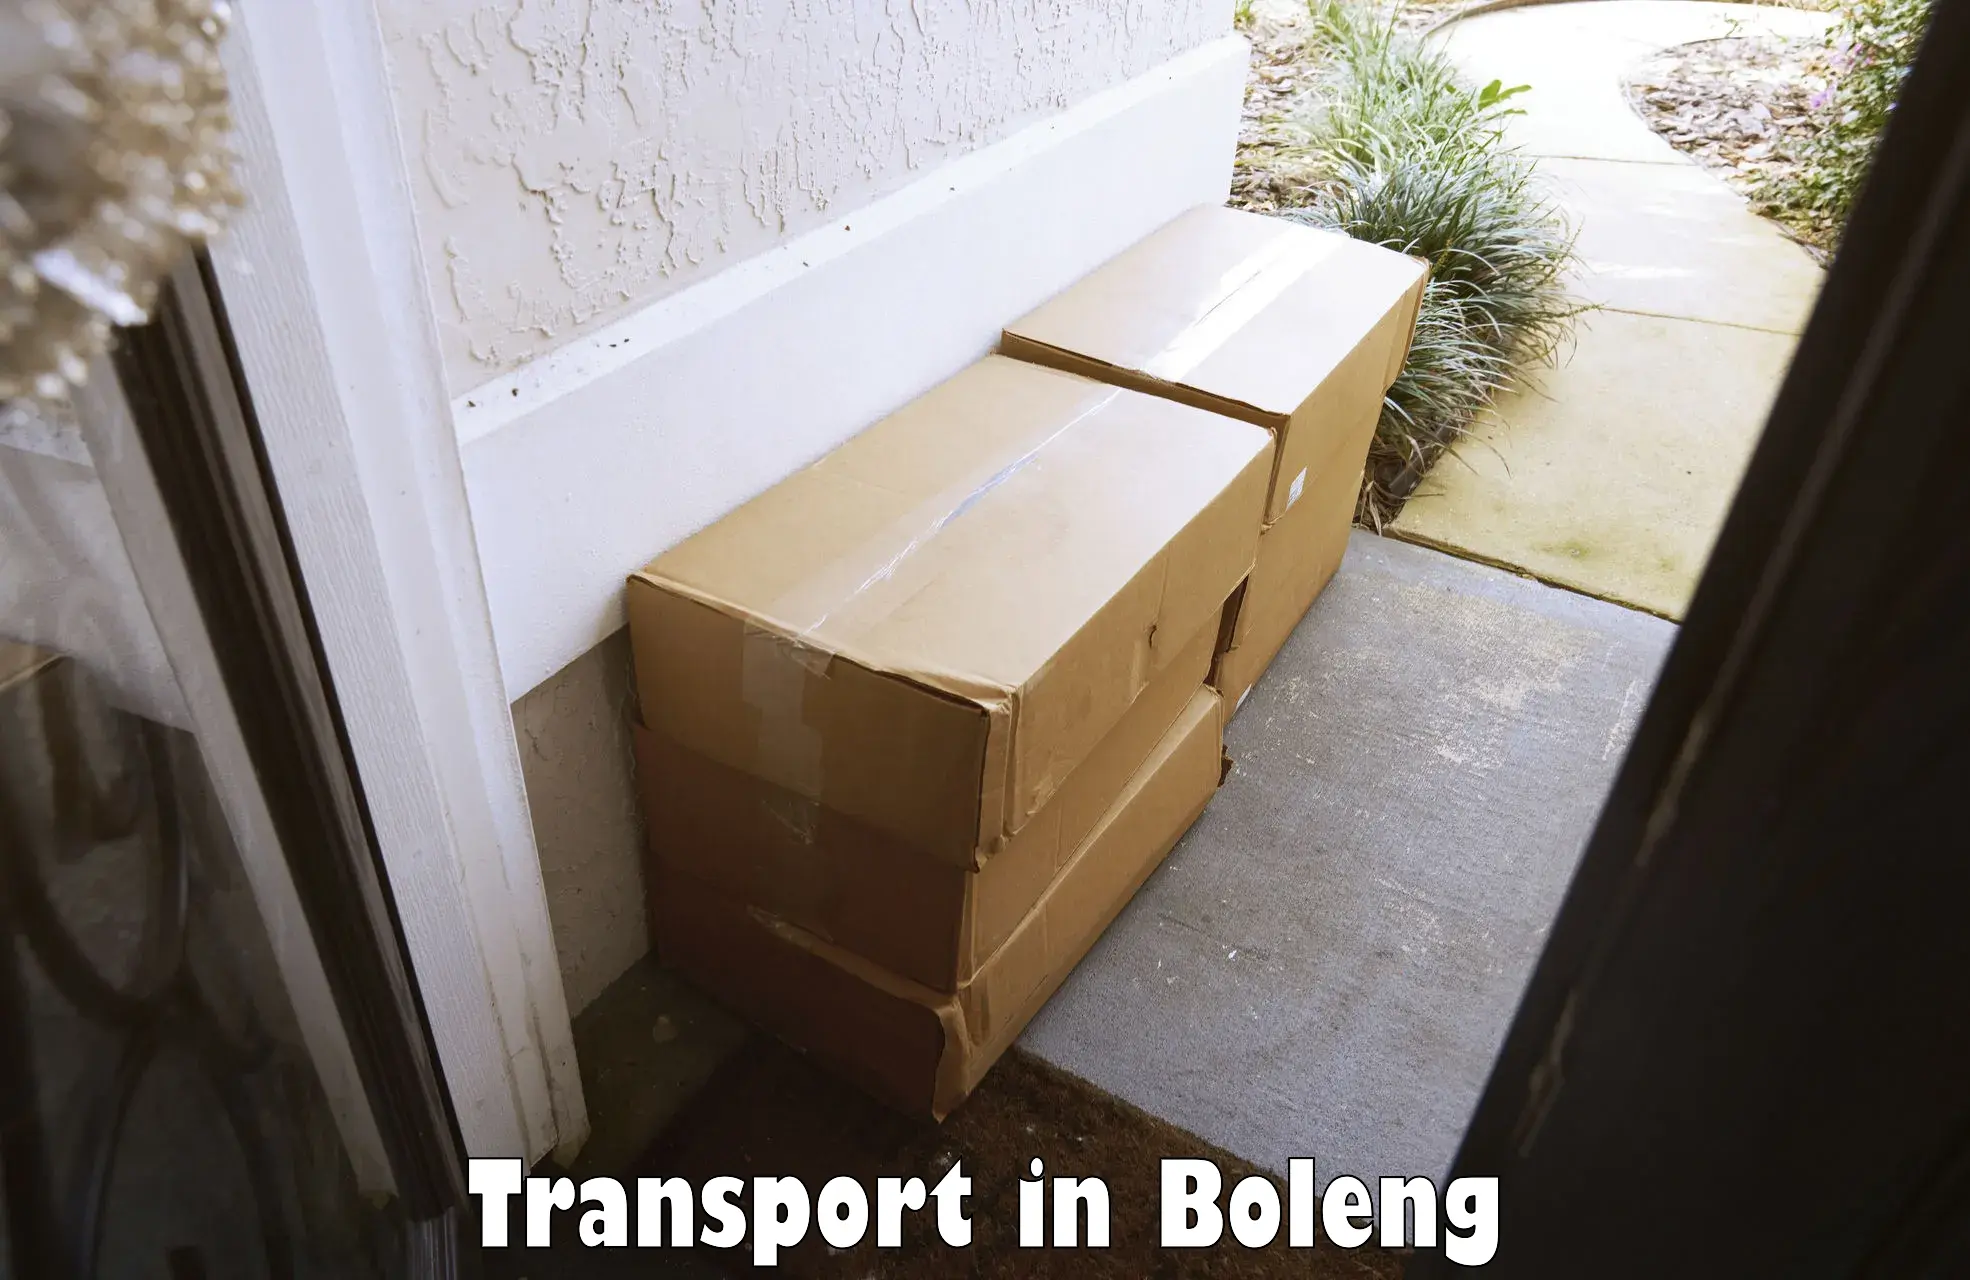 Cargo transportation services in Boleng